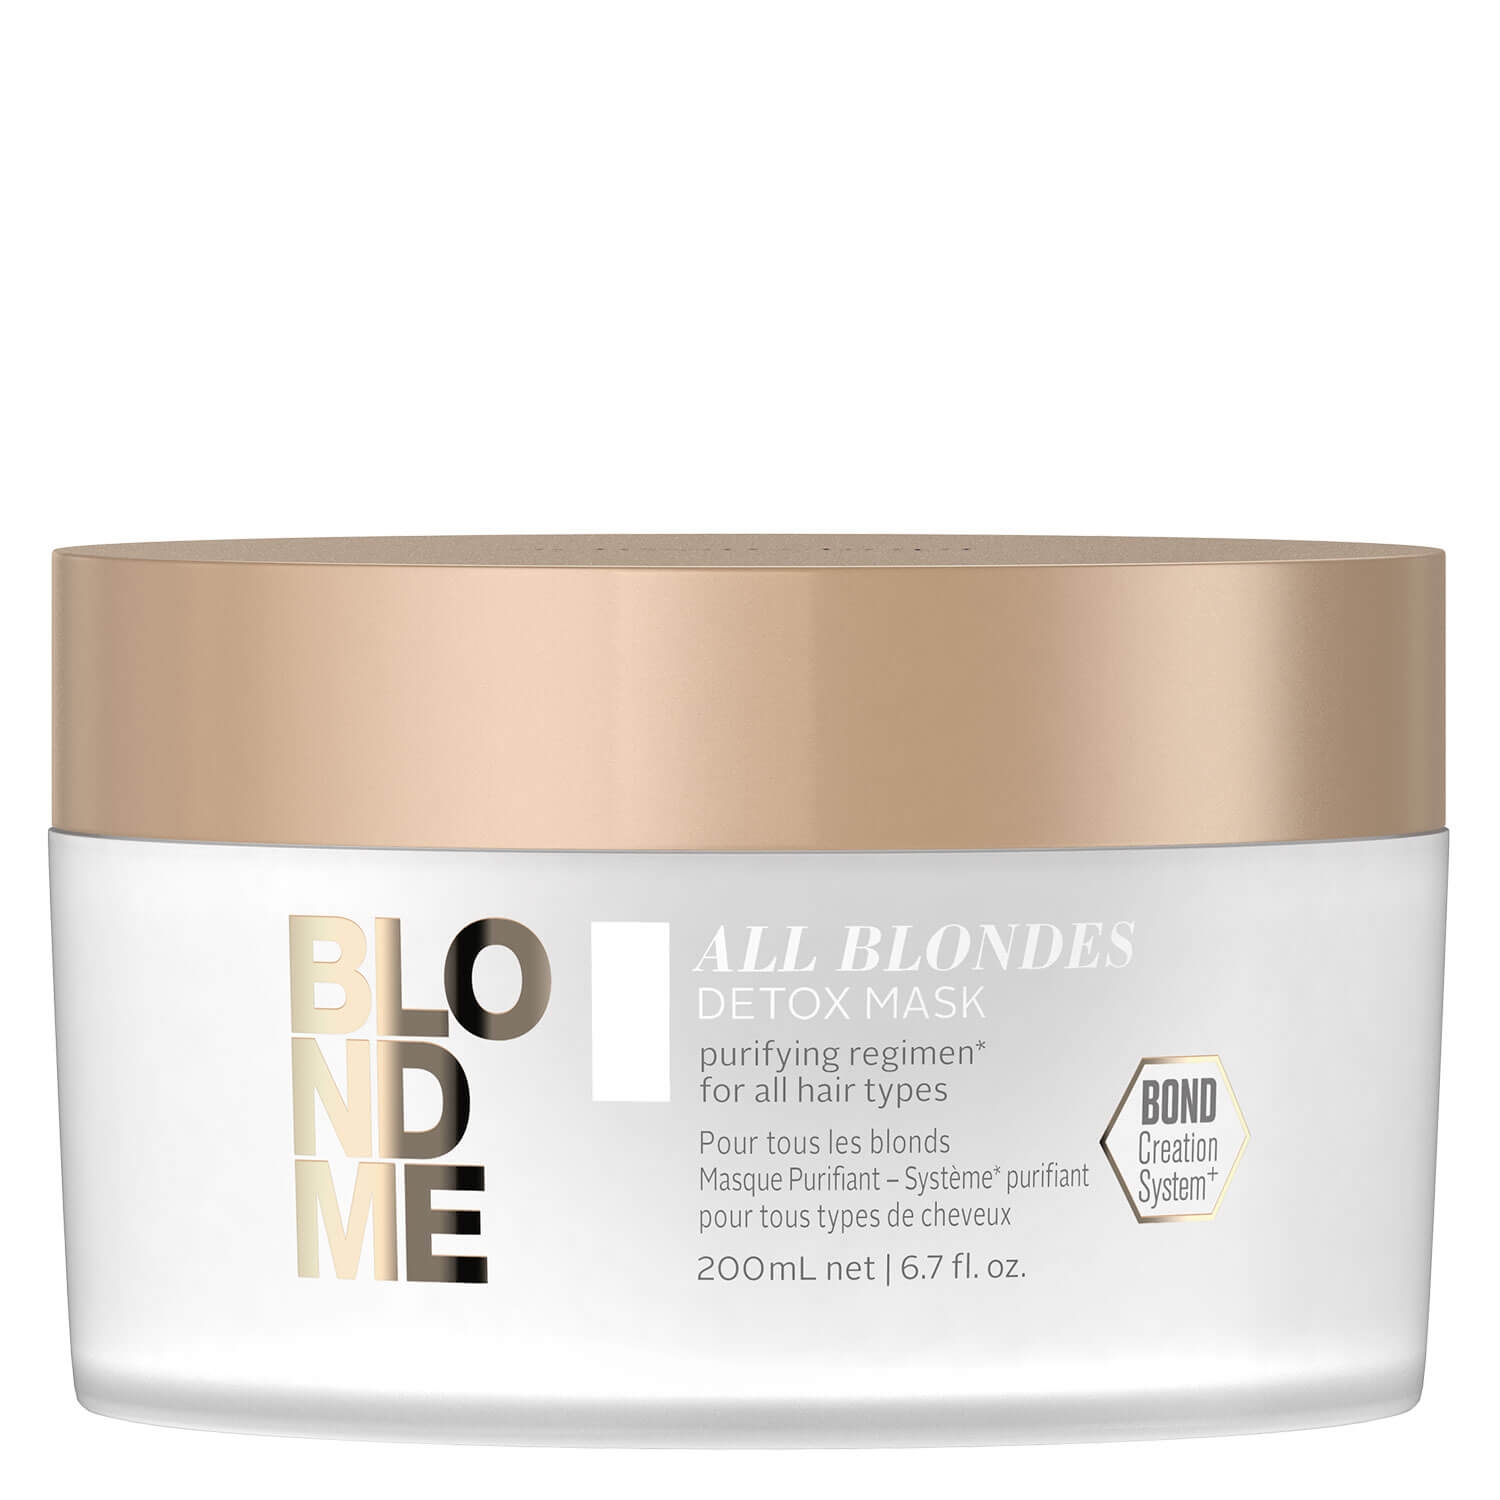 Produktbild von Blondme - All Blondes Detox Mask